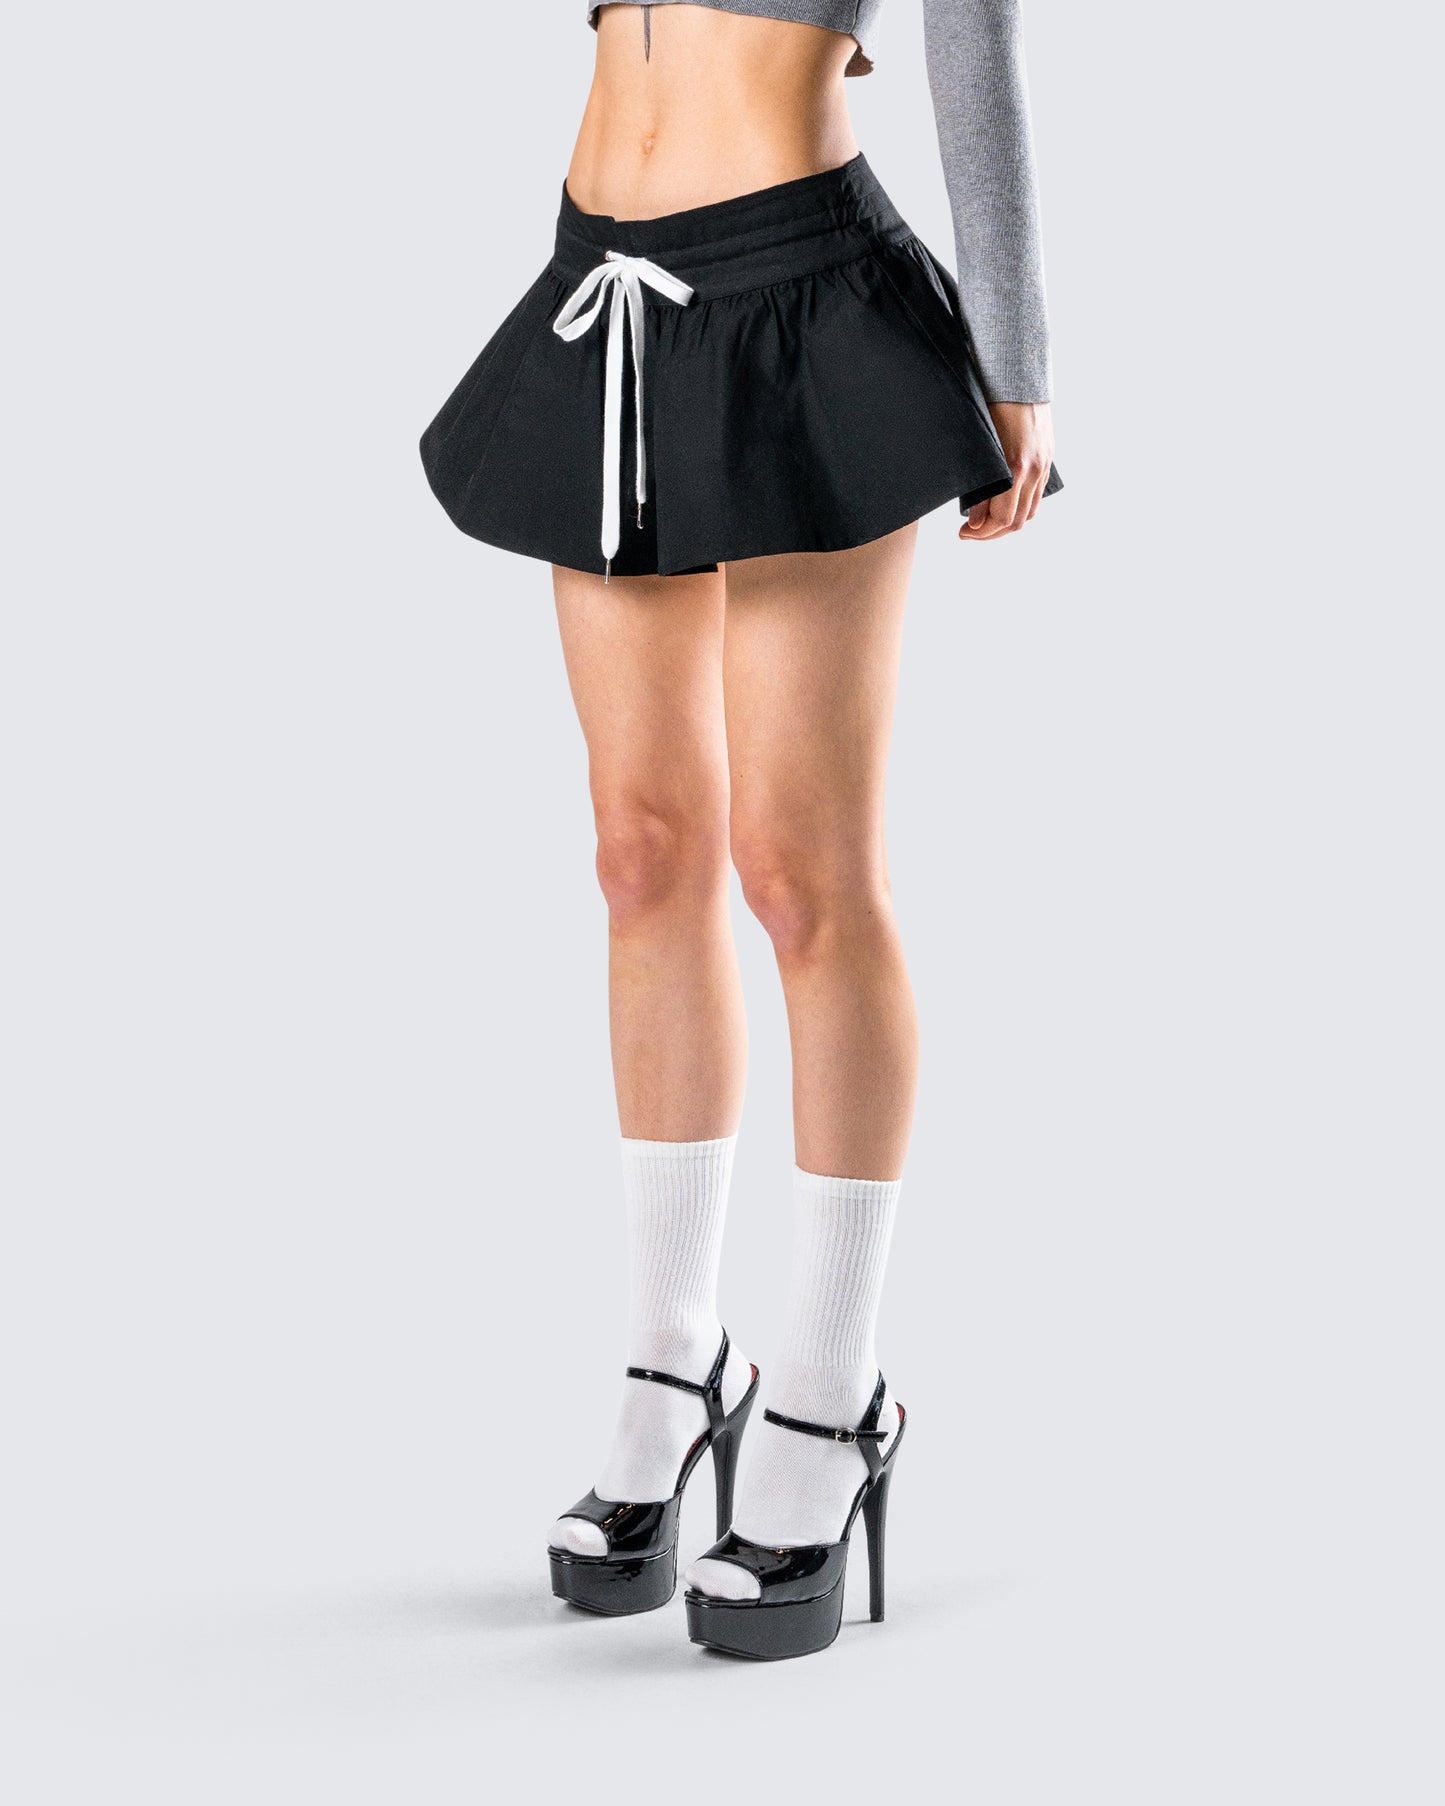 Kata Black Flounce Mini Skirt